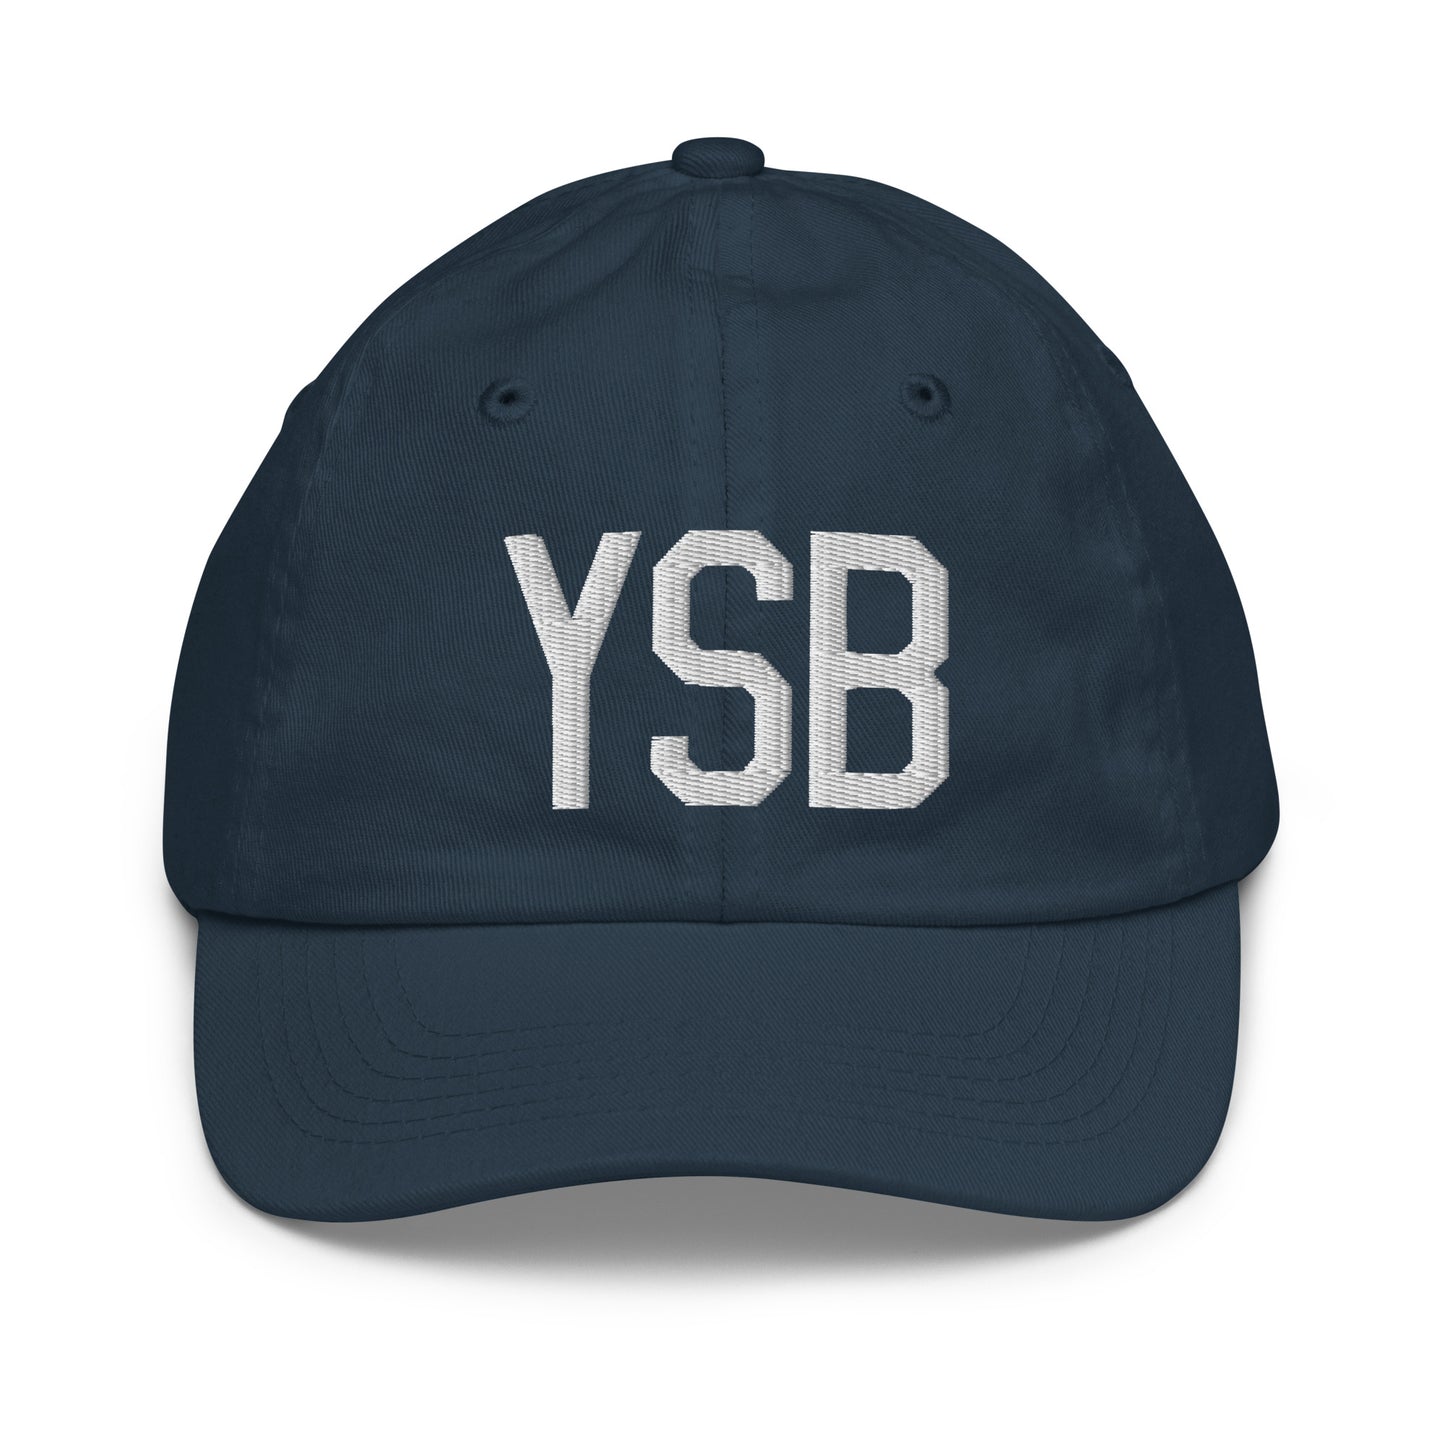 Airport Code Kid's Baseball Cap - White • YSB Sudbury • YHM Designs - Image 14